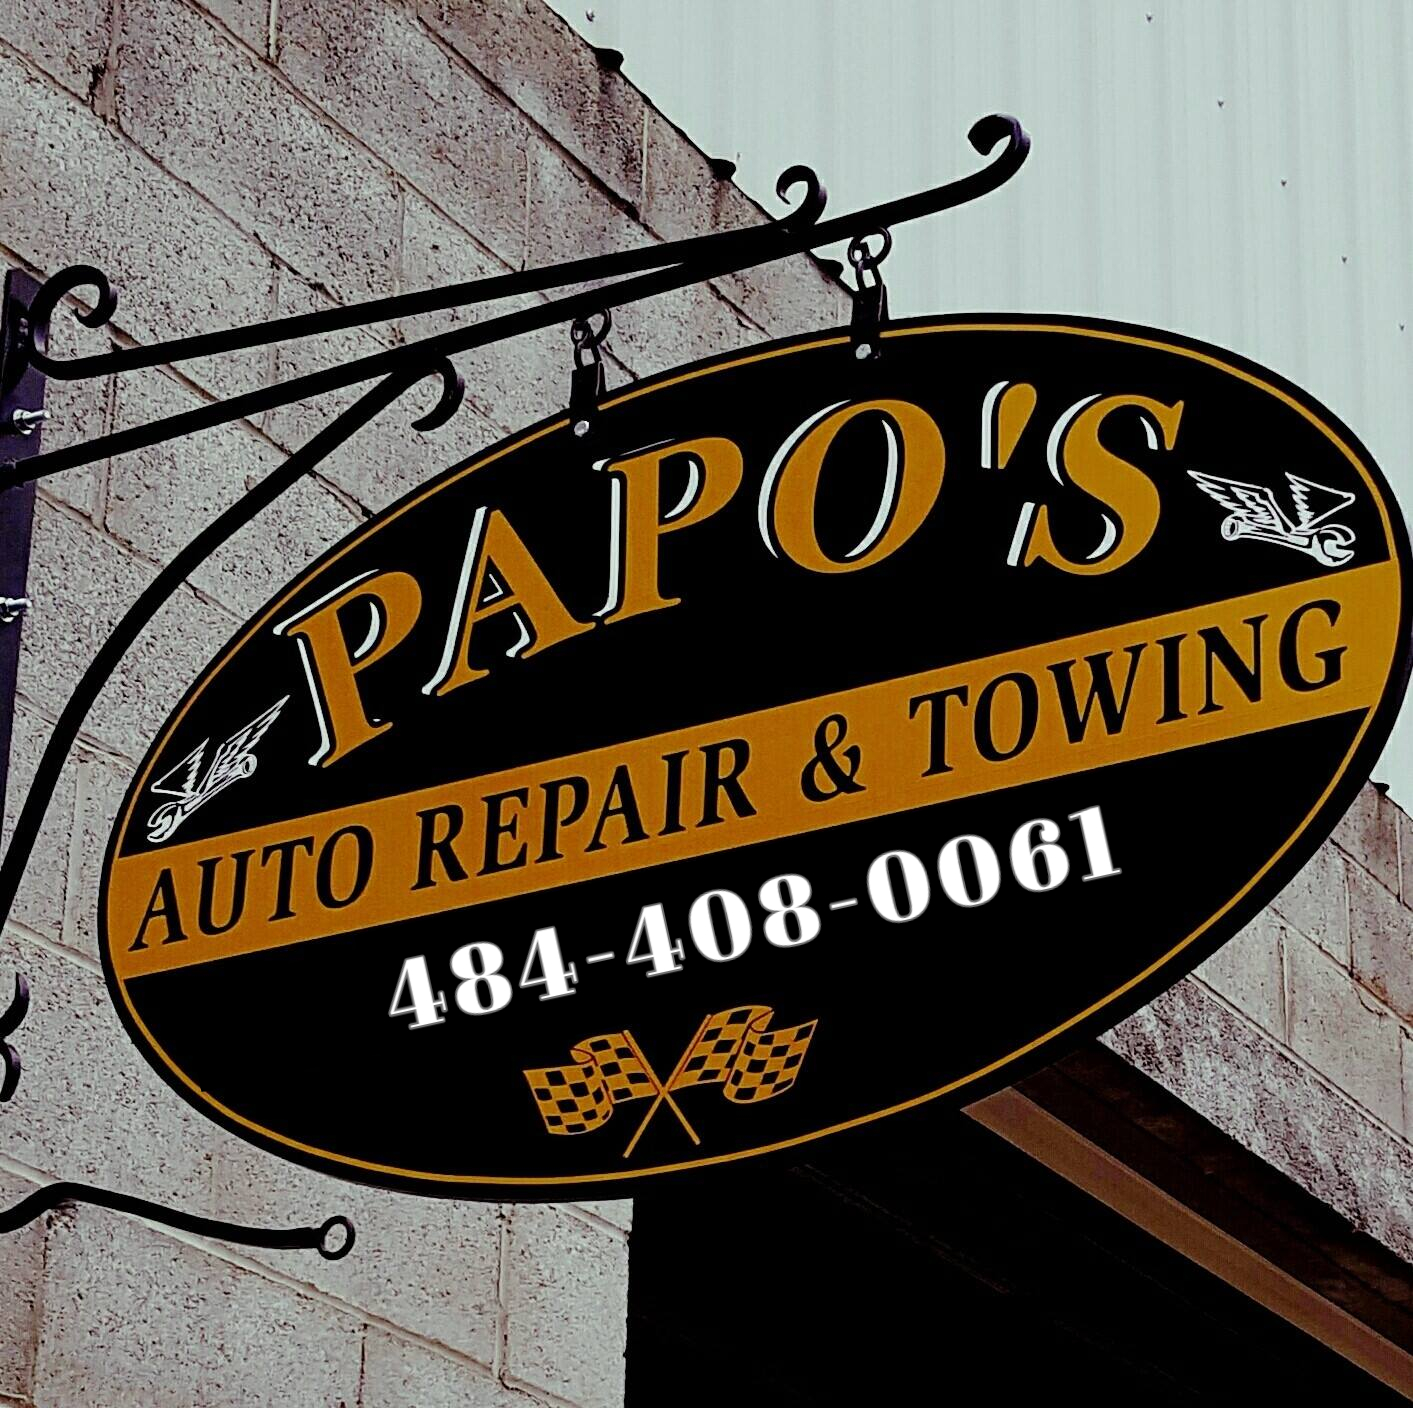 Papo's Auto Repair & Towing